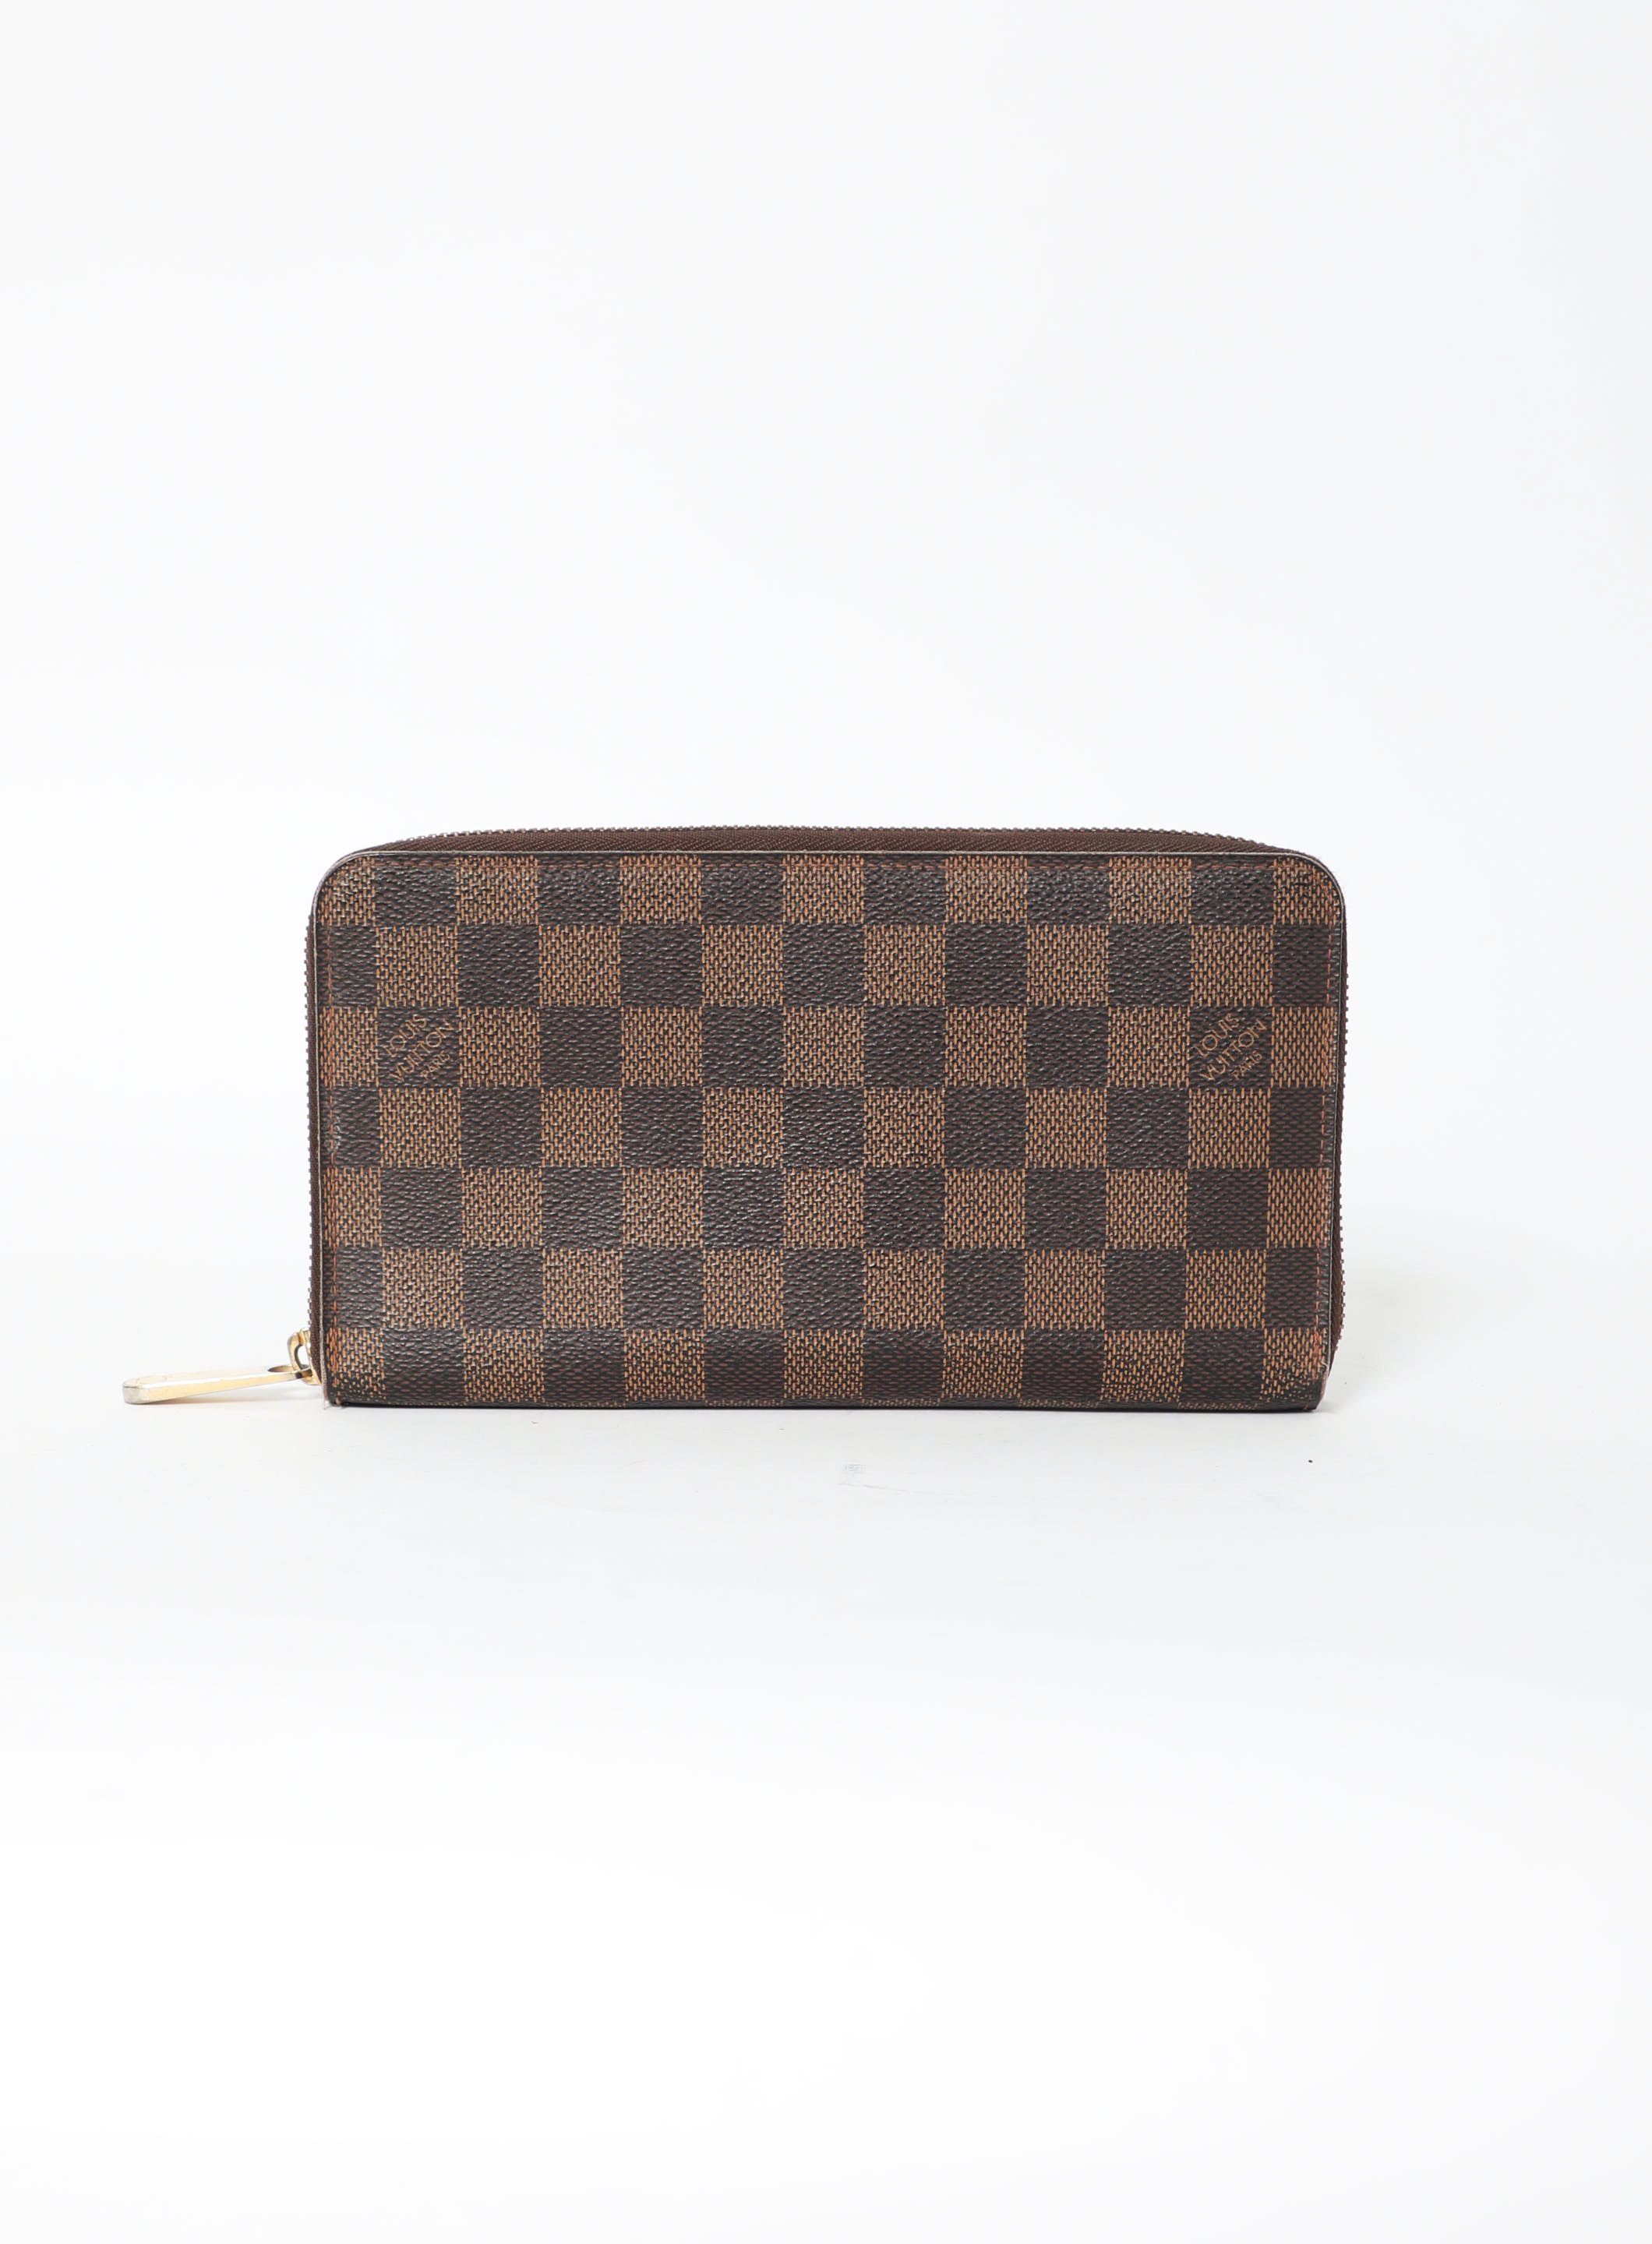 Louis Vuitton, Bags, Authentic Louis Vuitton Damier Ebene Zippy Wallet  With Box 3568m